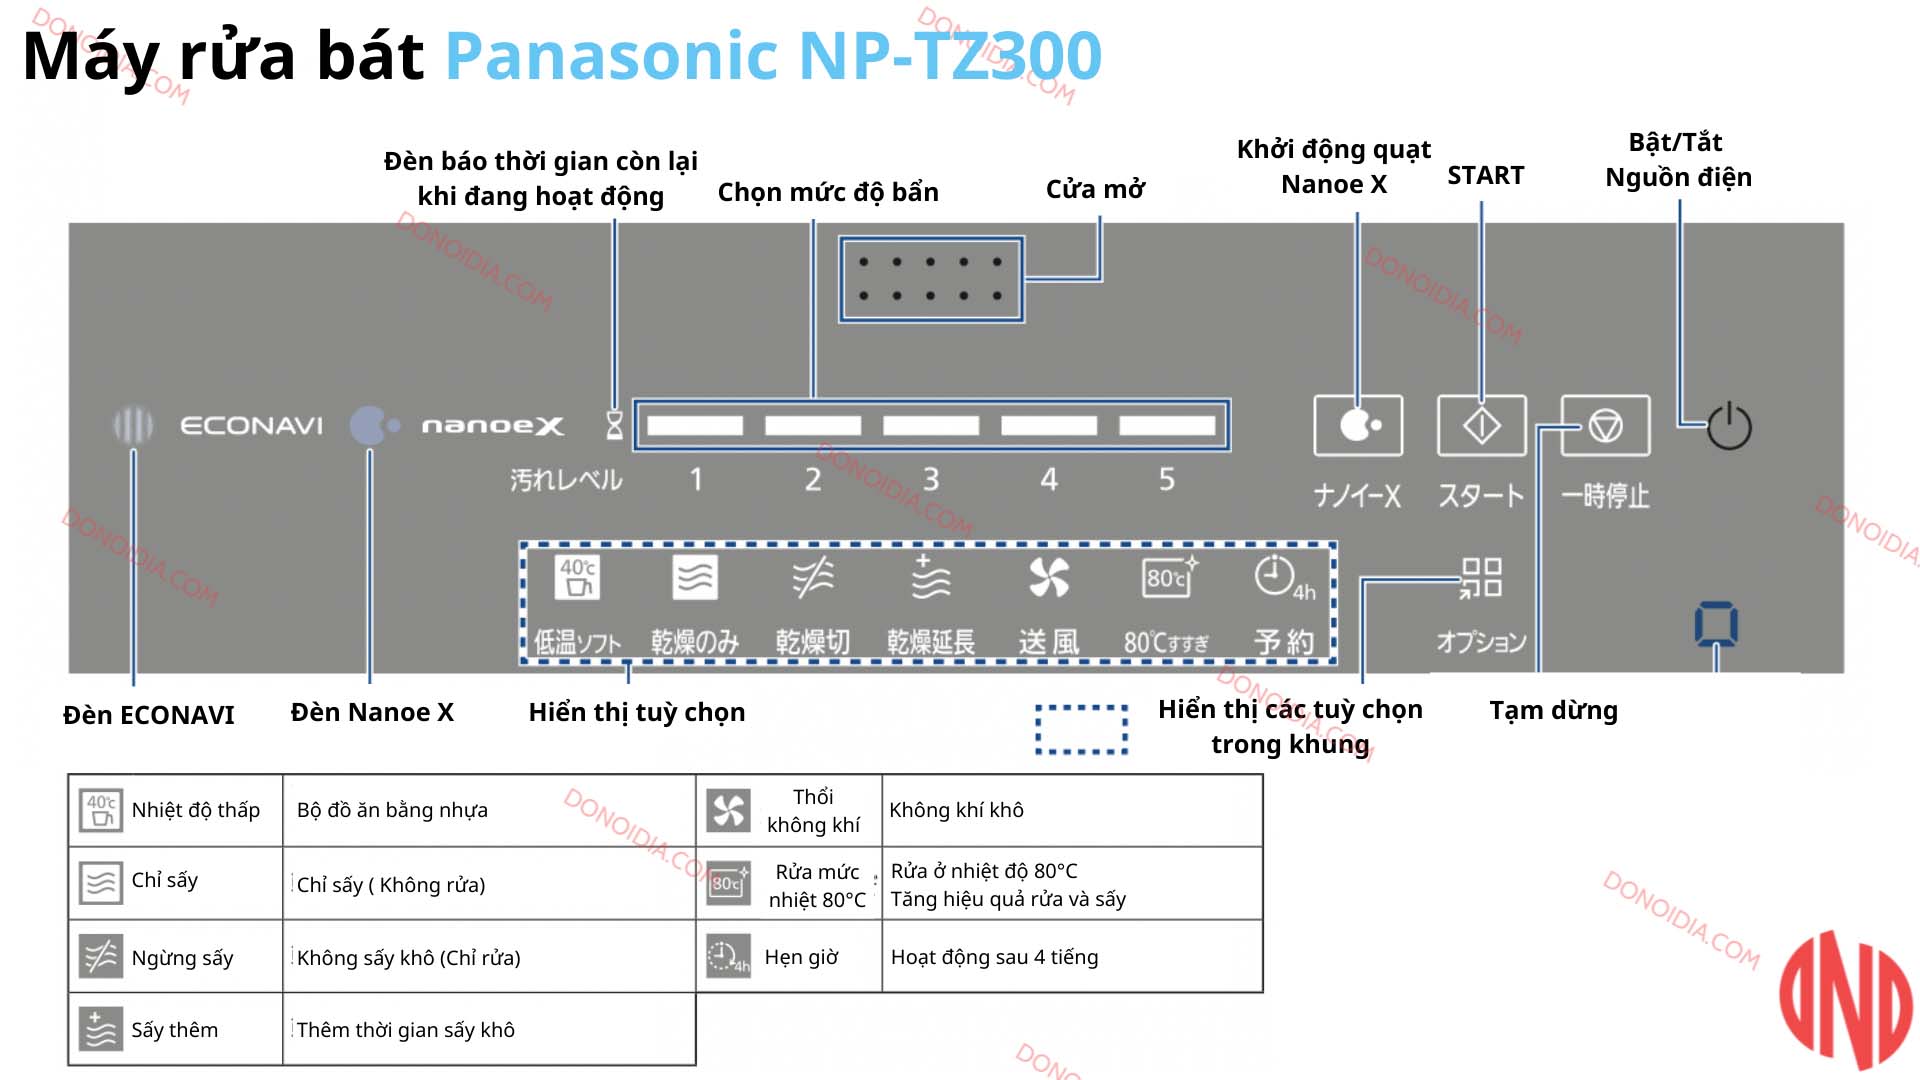 Hướng dẫn sử dụng máy rửa bát Panasonic NP-TZ300